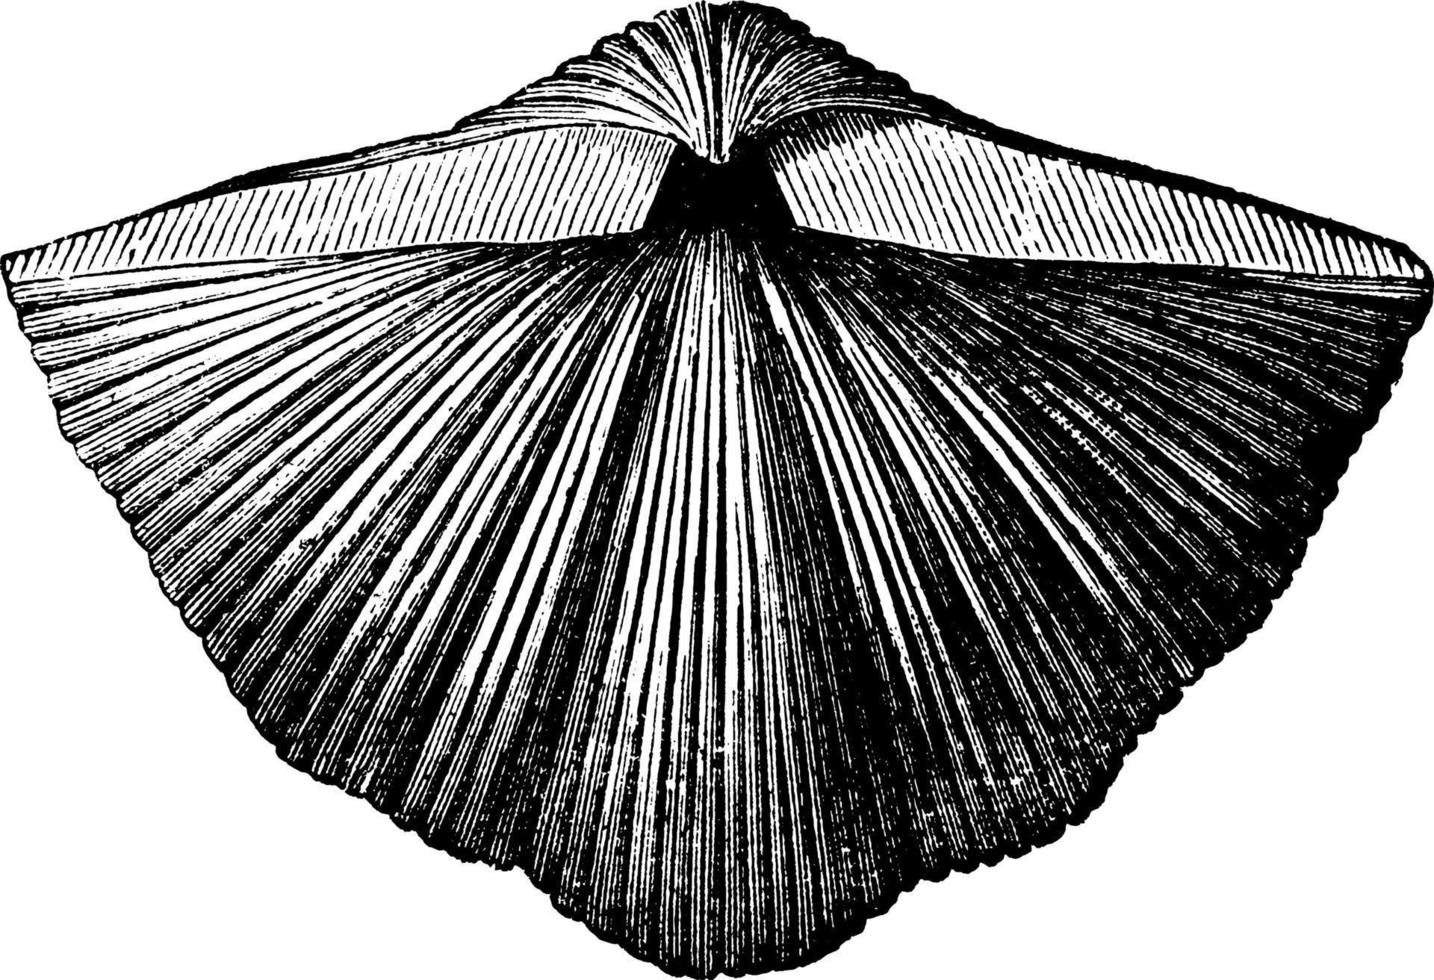 mollusque spirifère, illustration vintage vecteur